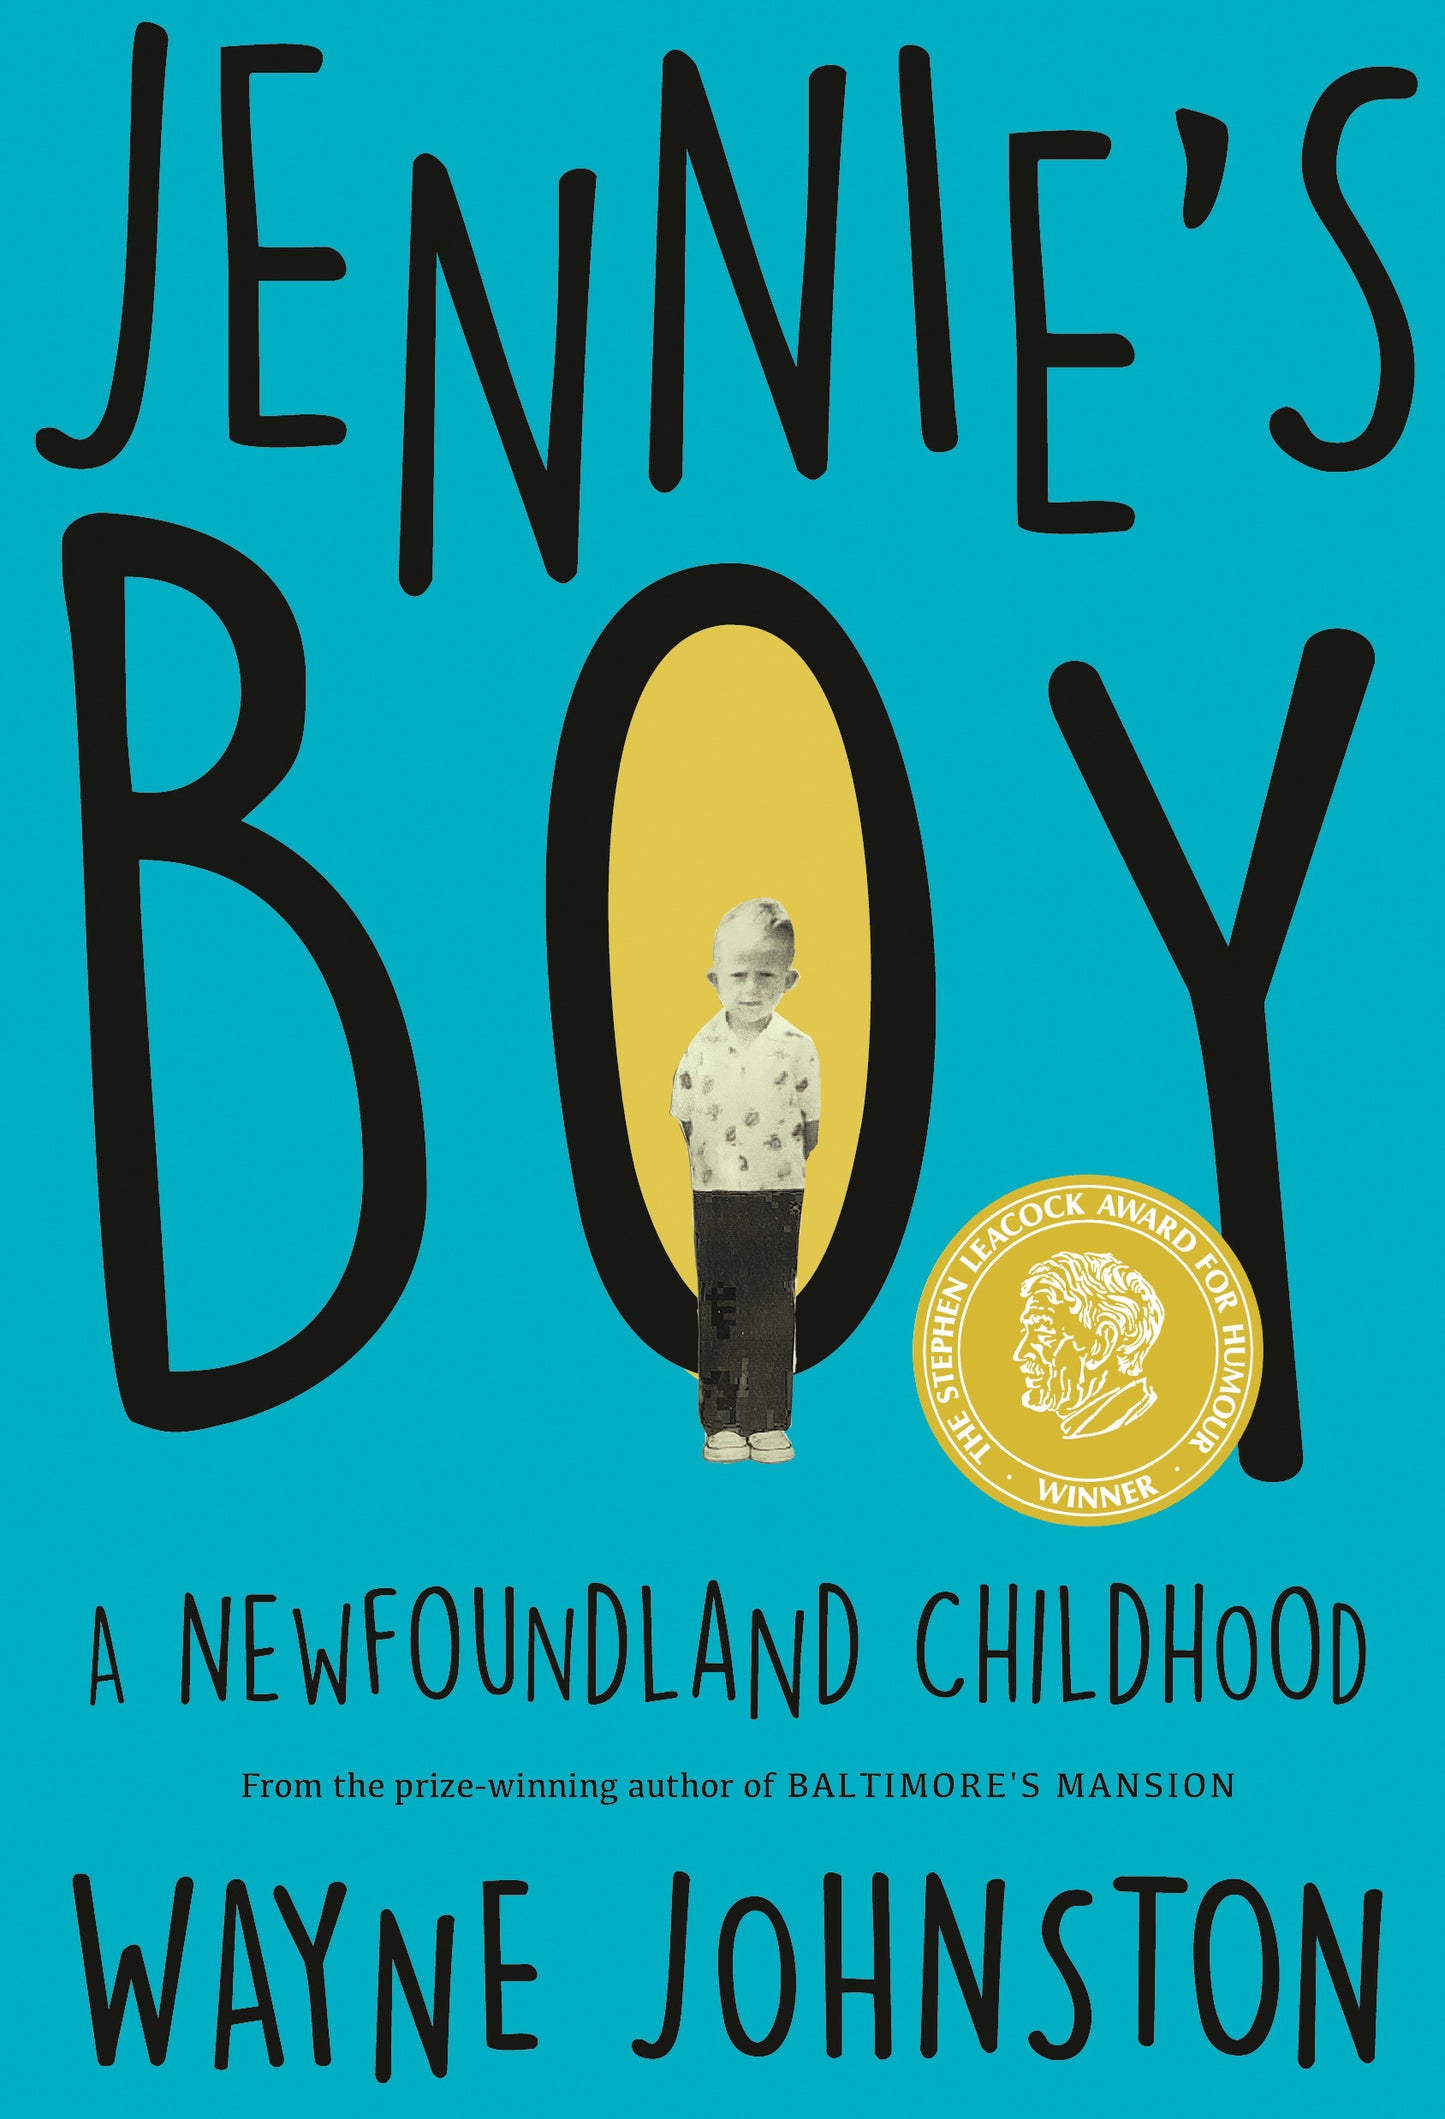 Jennie's Boy: A Newfoundland childhood